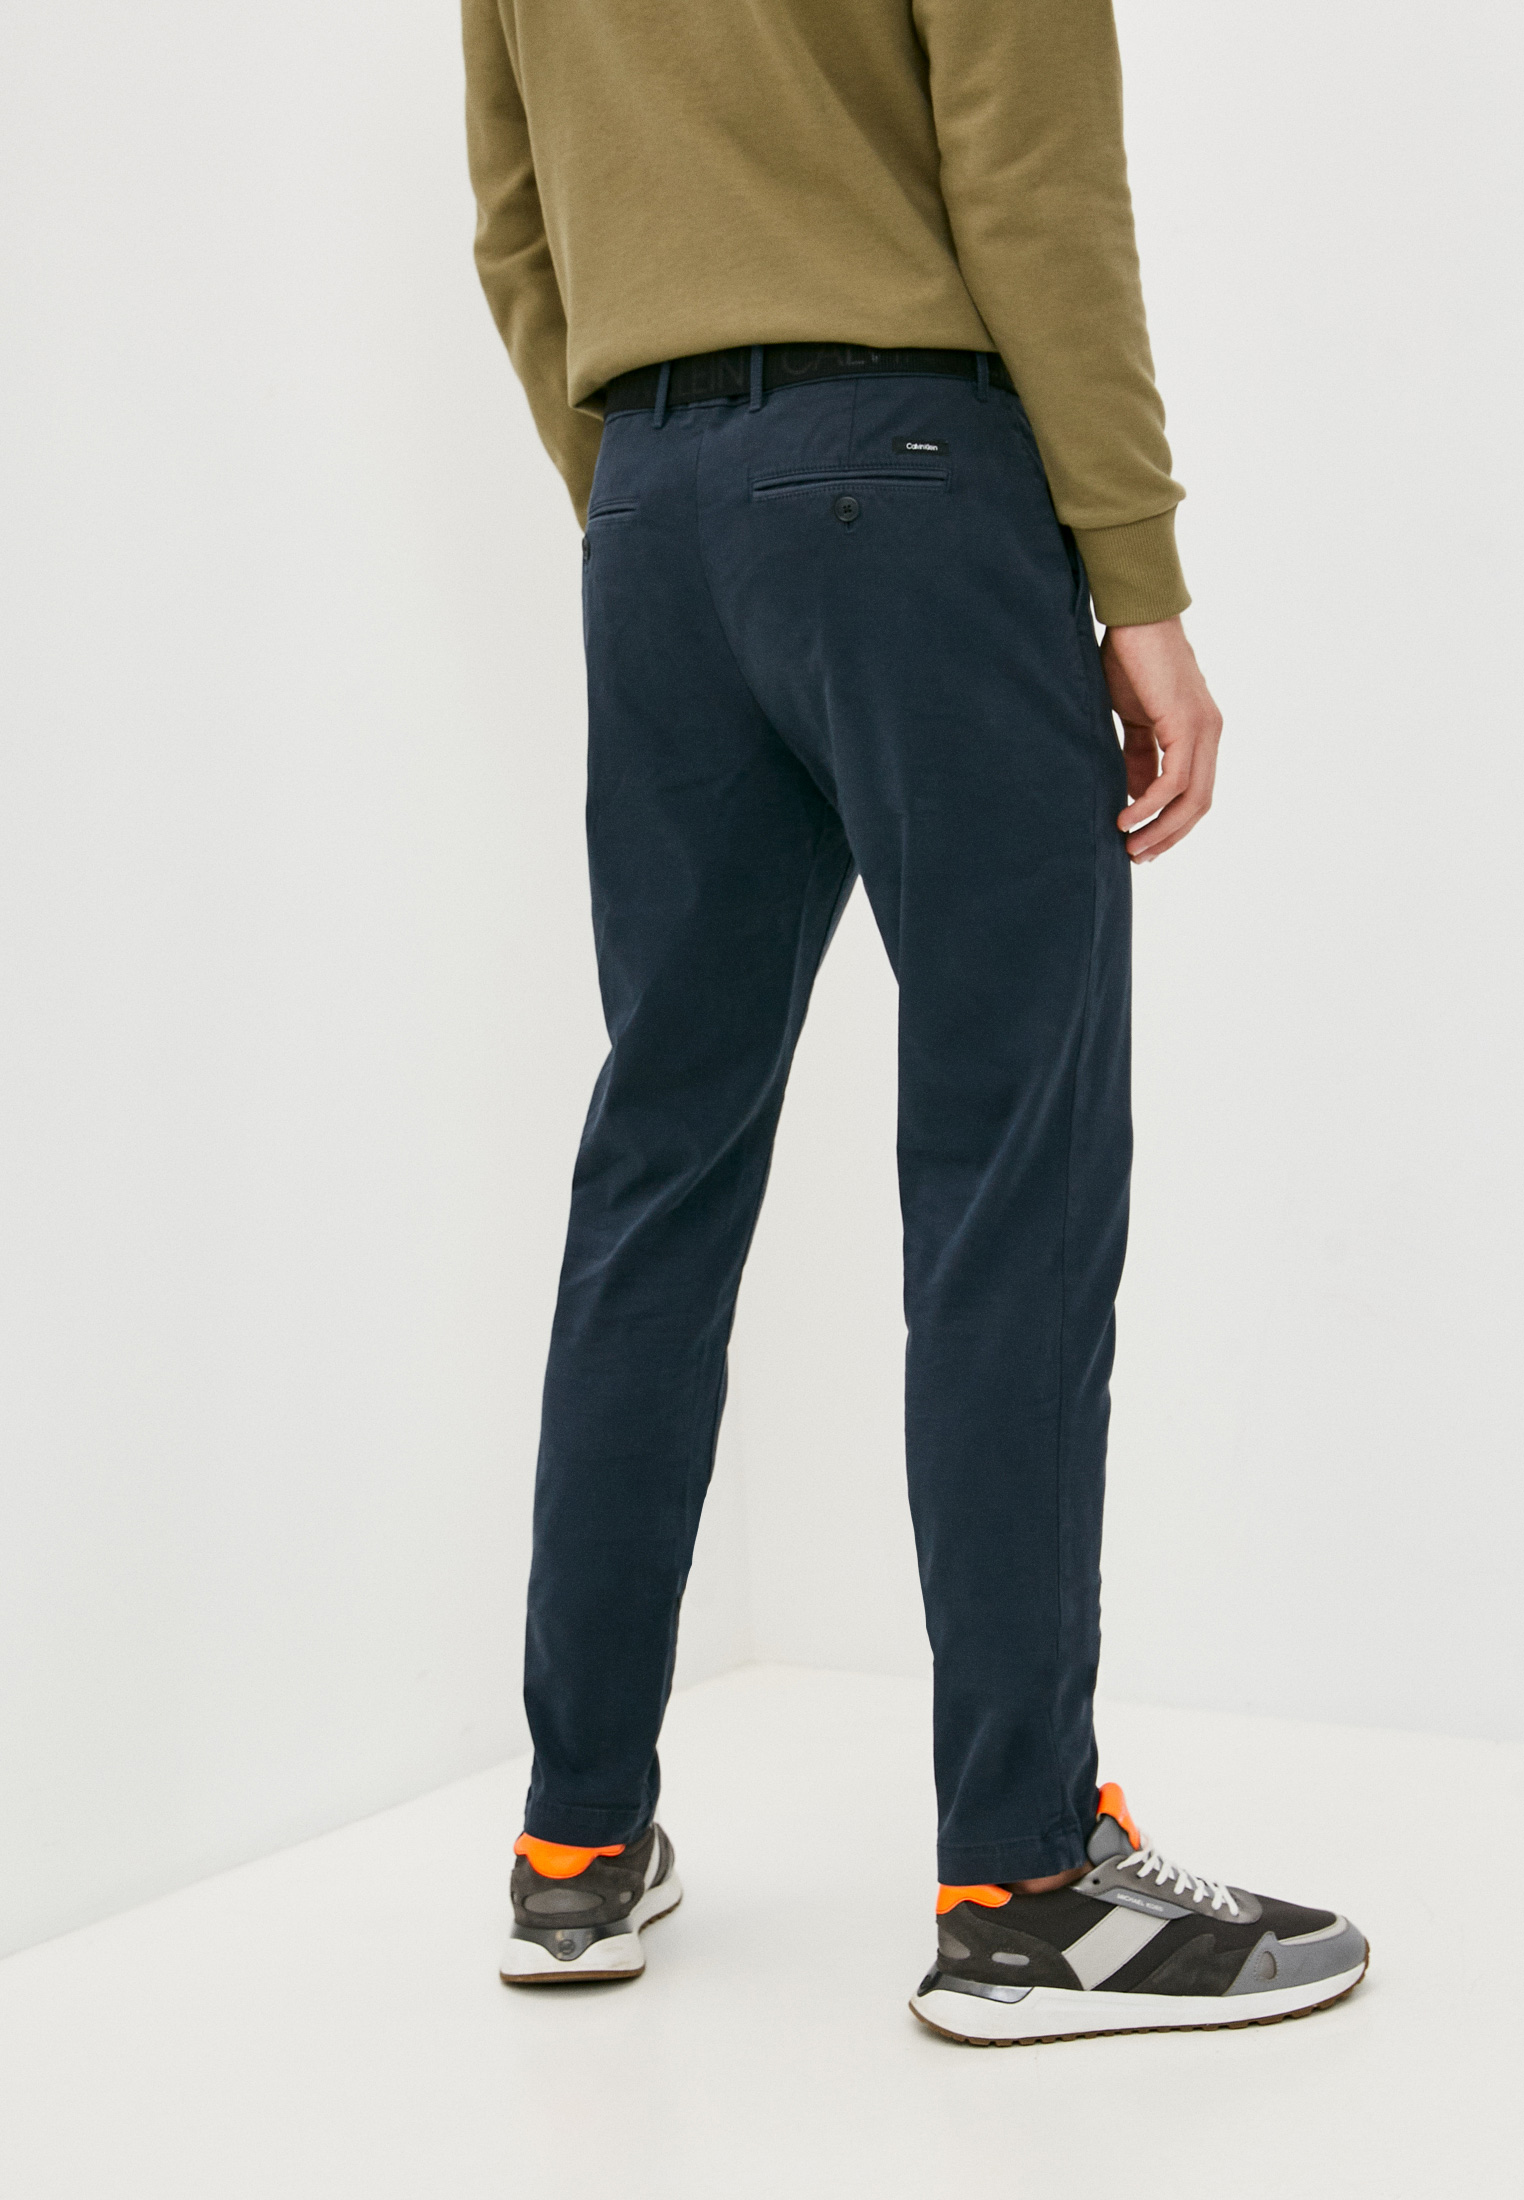 Мужские повседневные брюки Calvin Klein (Кельвин Кляйн) K10K106894: изображение 4